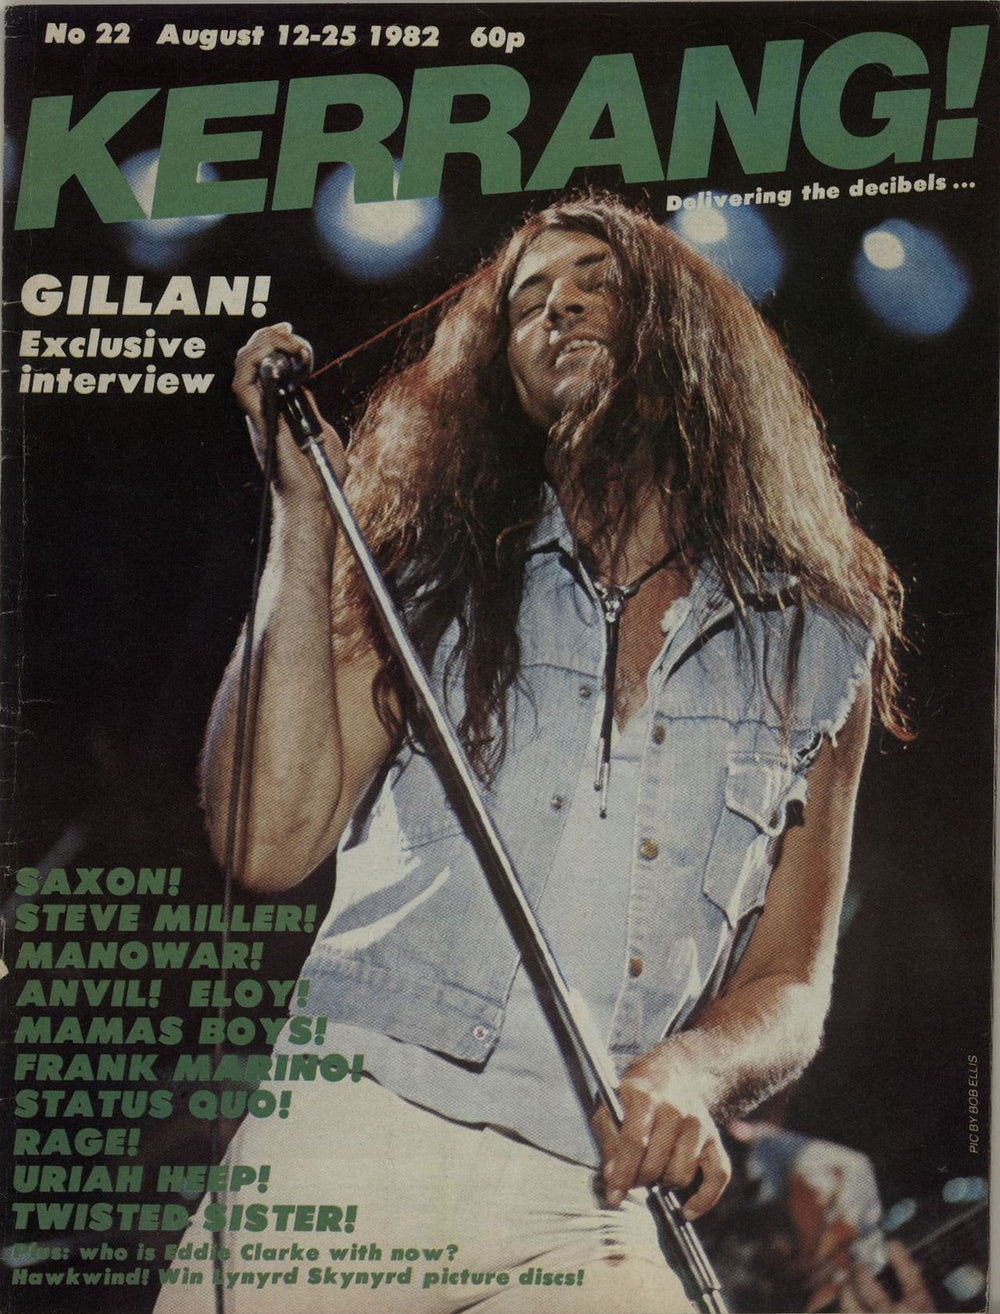 Kerrang! Magazine Kerrang! Magazine - Aug 82 UK magazine 22